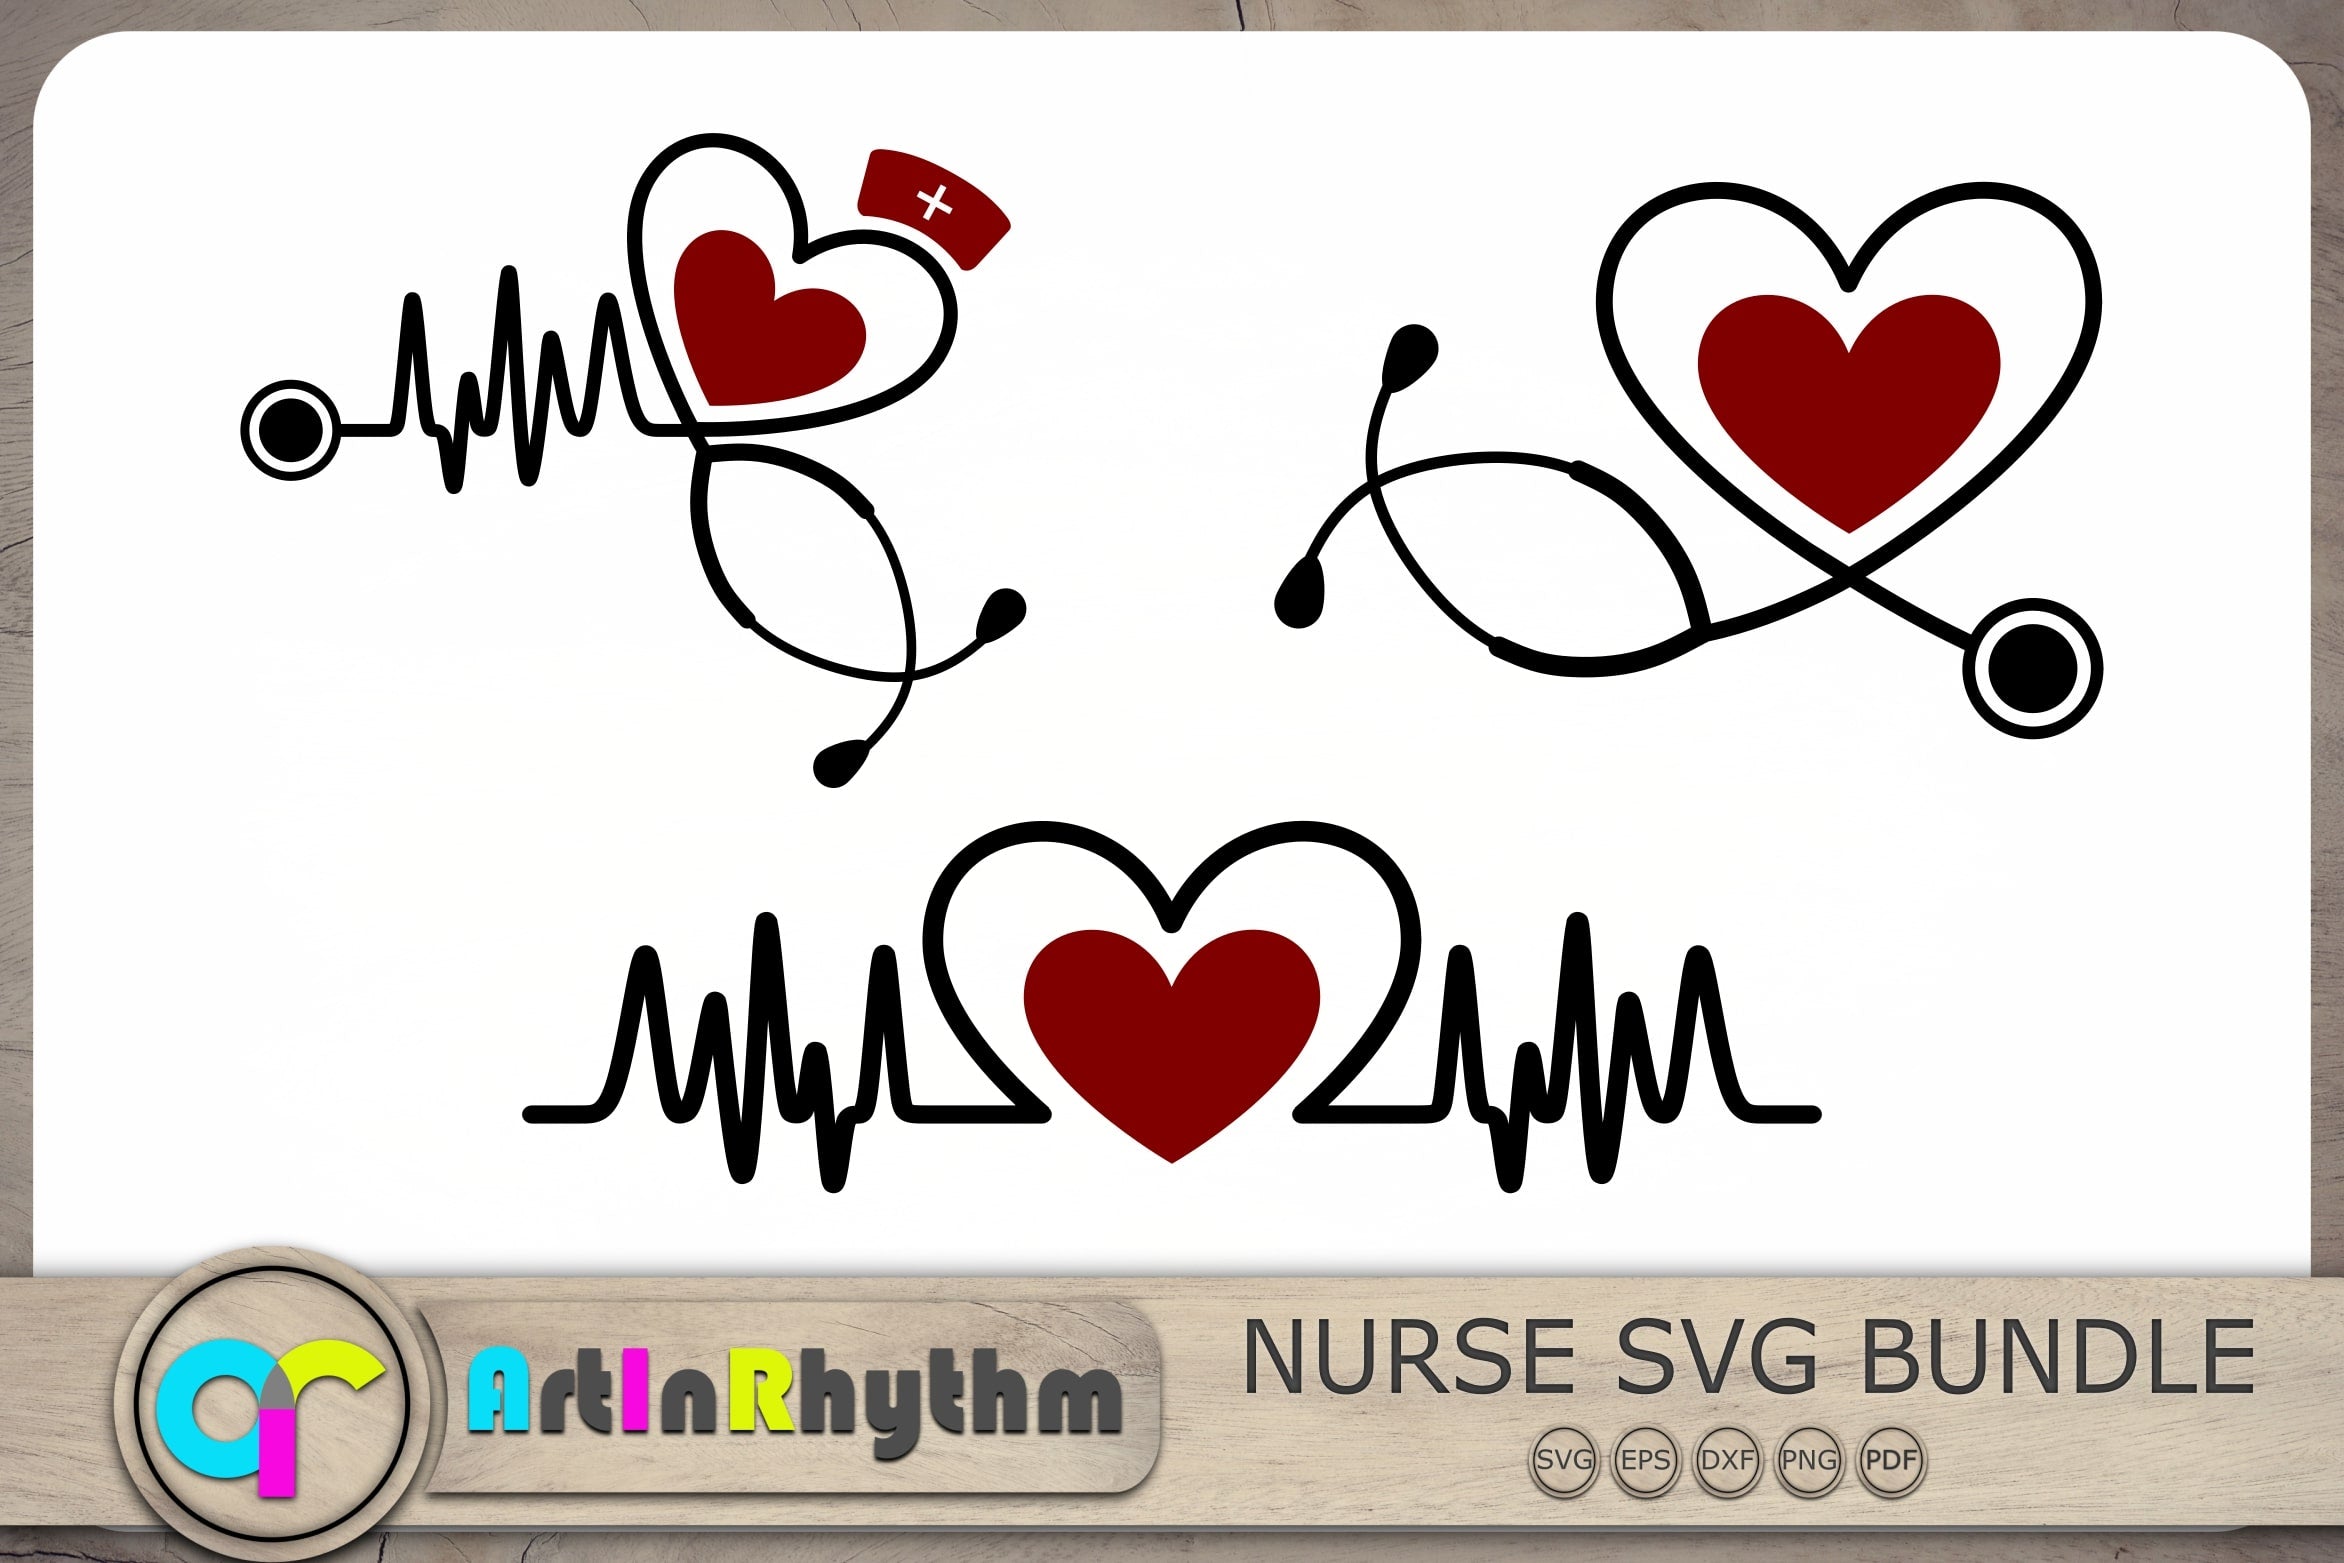 Nurse practitioner svg bundle - So Fontsy